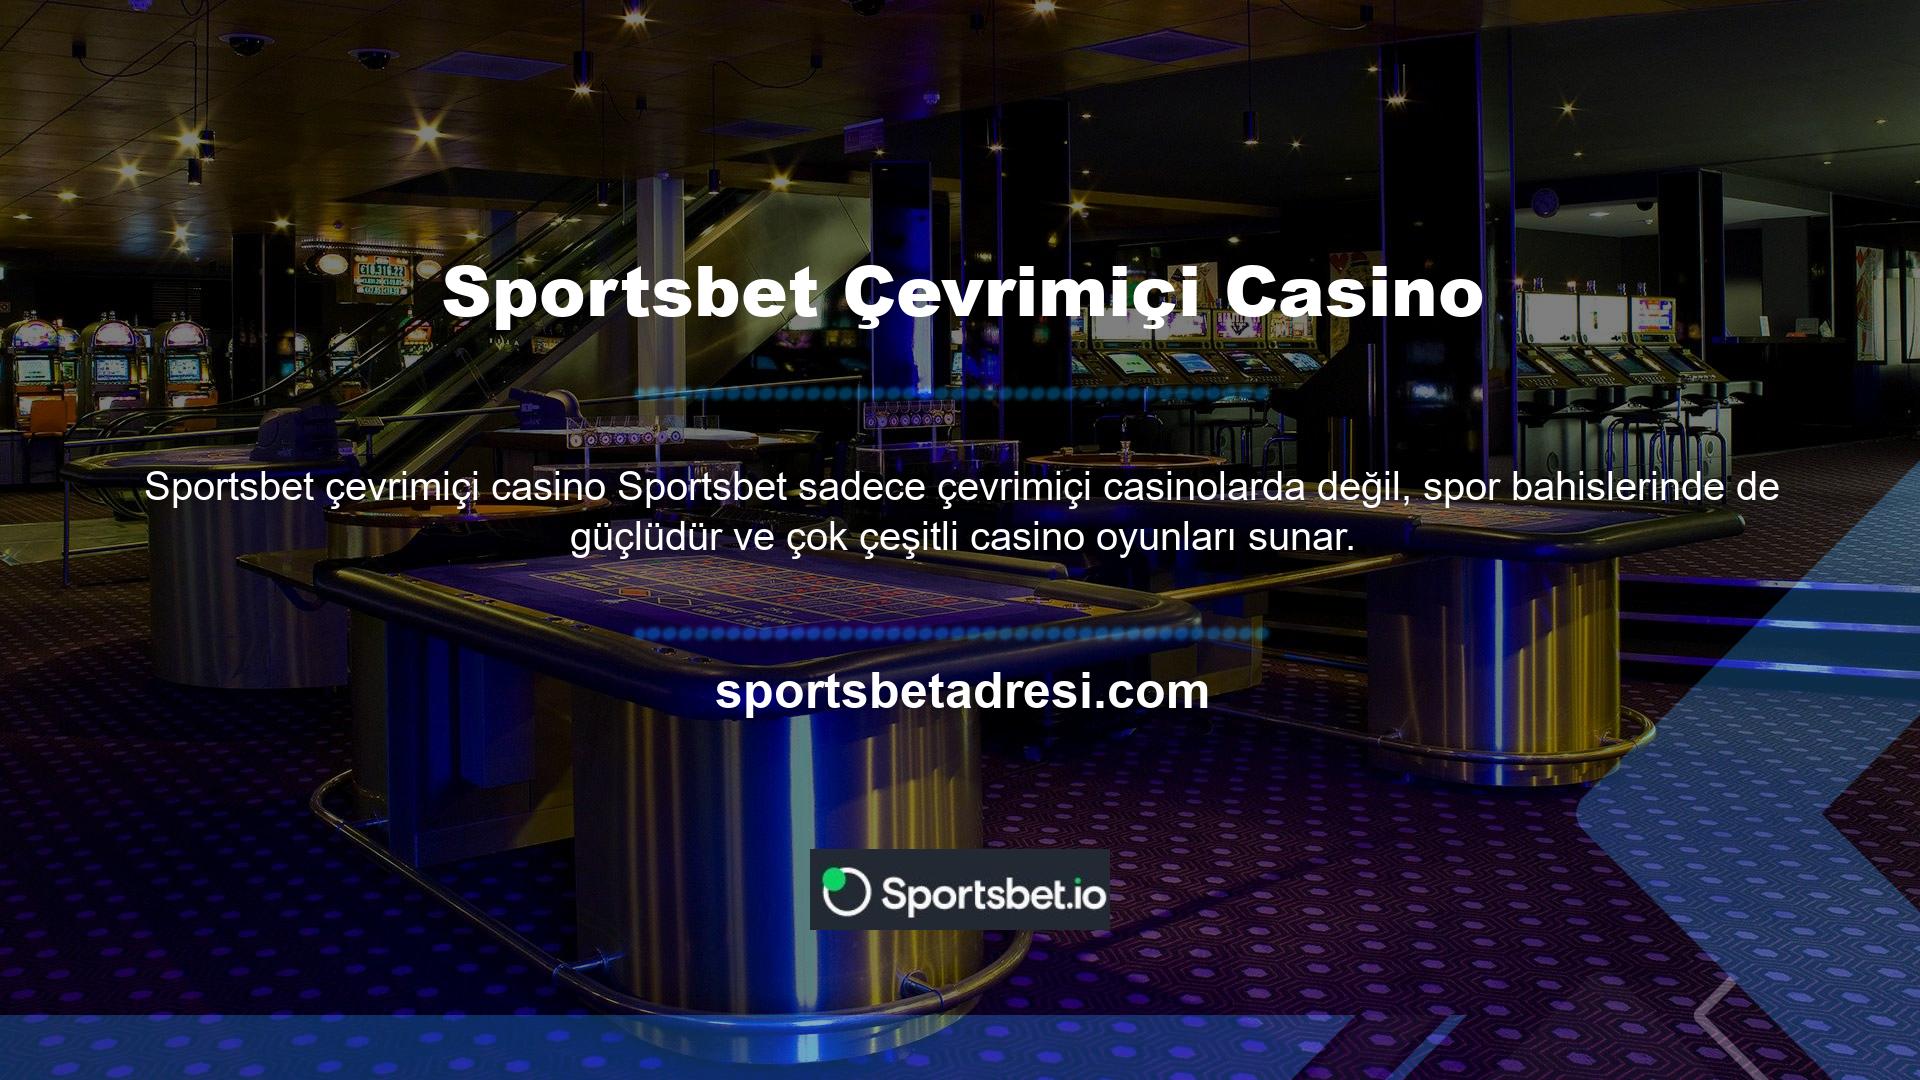 Sportsbet casino oyunları kategorisinde slot tarzı oyunların yanı sıra canlı krupiyelerle oynayabileceğiniz canlı casino oyunları da bulunmaktadır